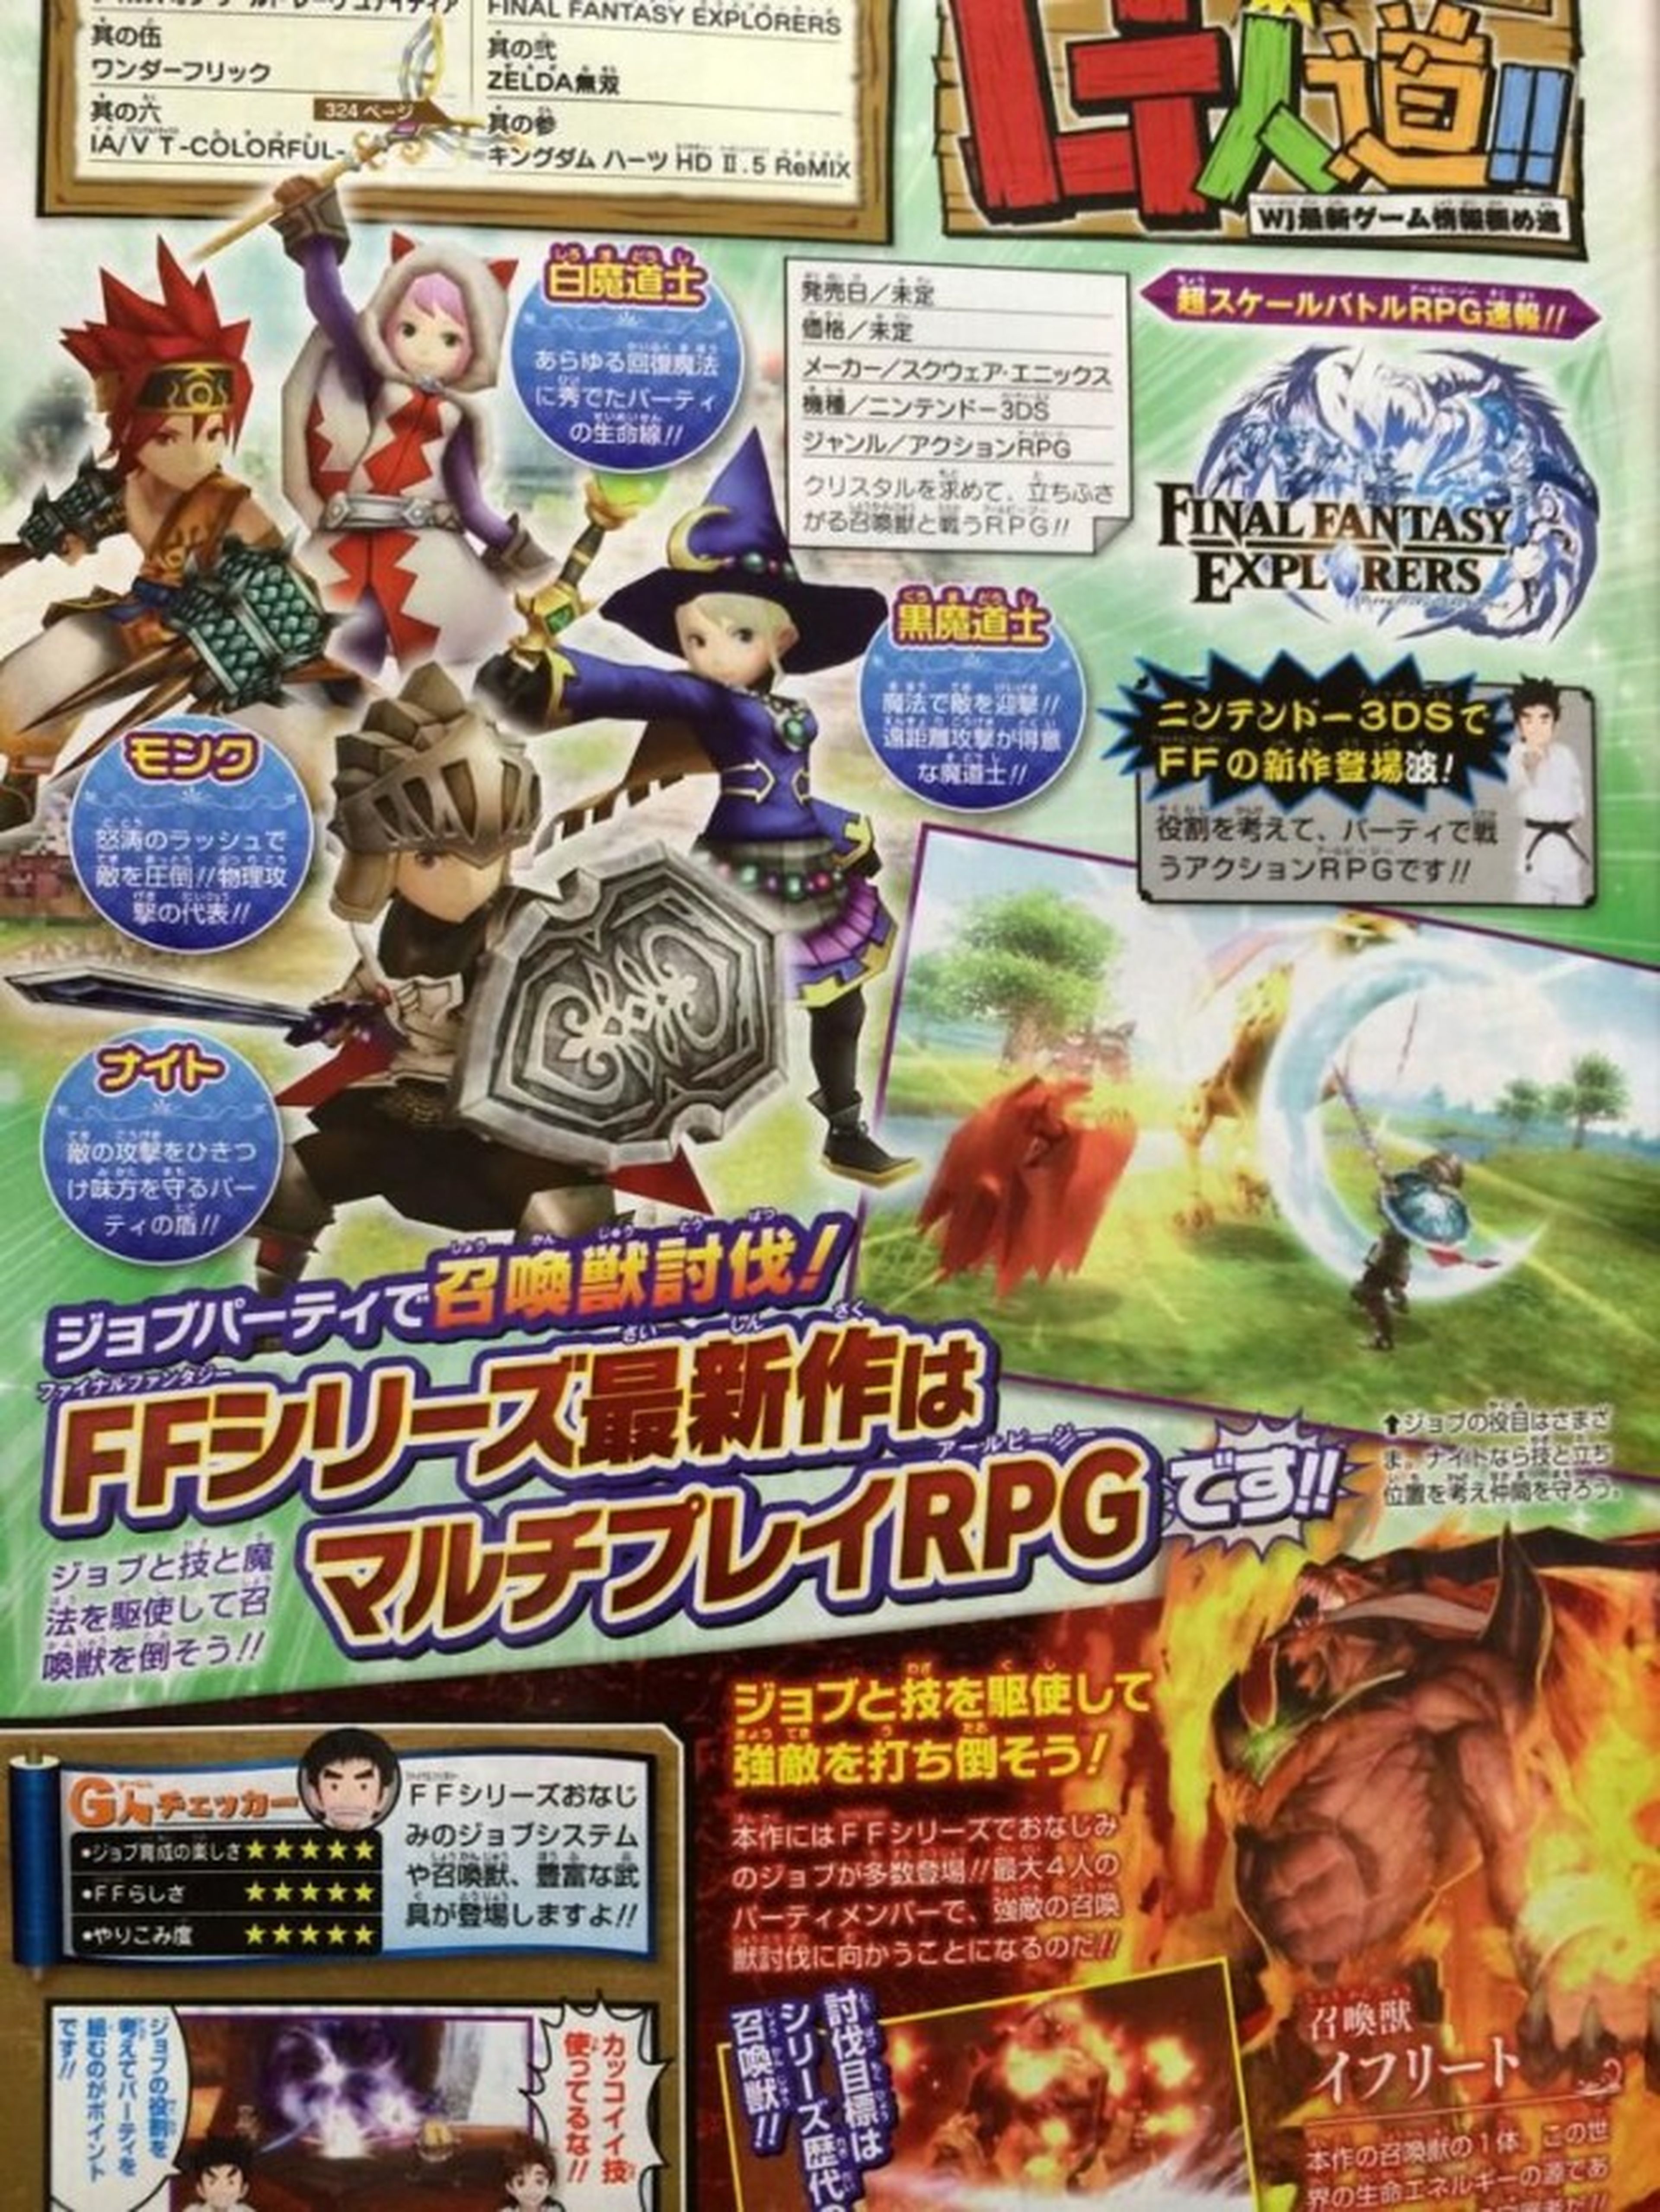 Final Fantasy Explorers, nuevo RPG multijugador para 3DS